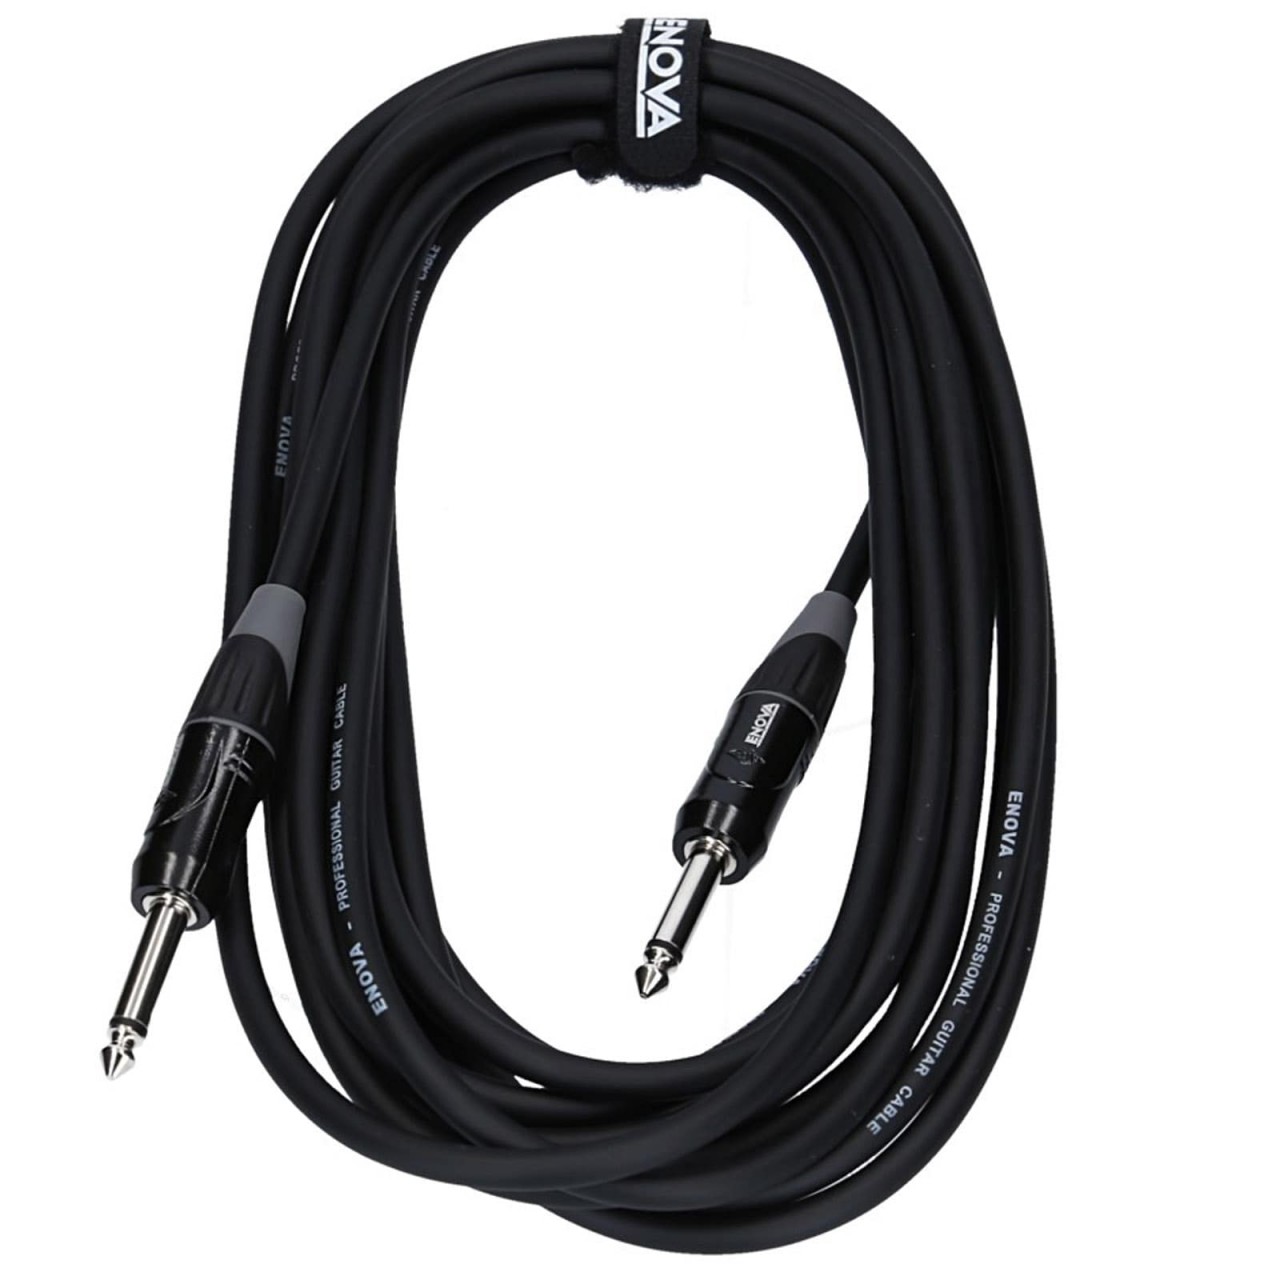 ENOVA audio cable, 2 m instrument cable 6.3 mm Jack 2 pin mono, EC-A1-PLMM2-2